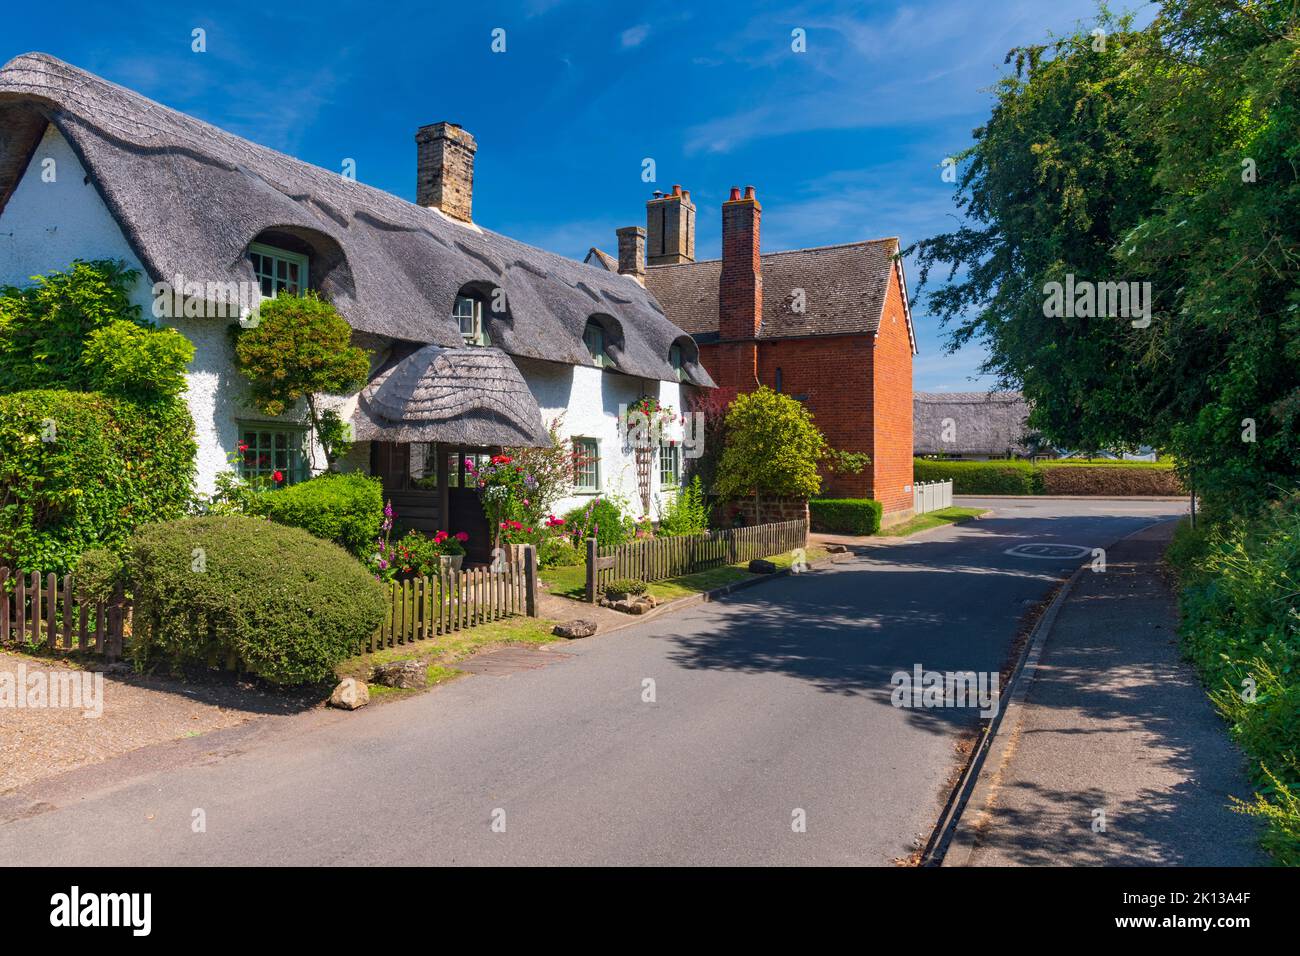 Maison traditionnelle de chaume, Bourn, Cambridgeshire, Angleterre, Royaume-Uni, Europe Banque D'Images